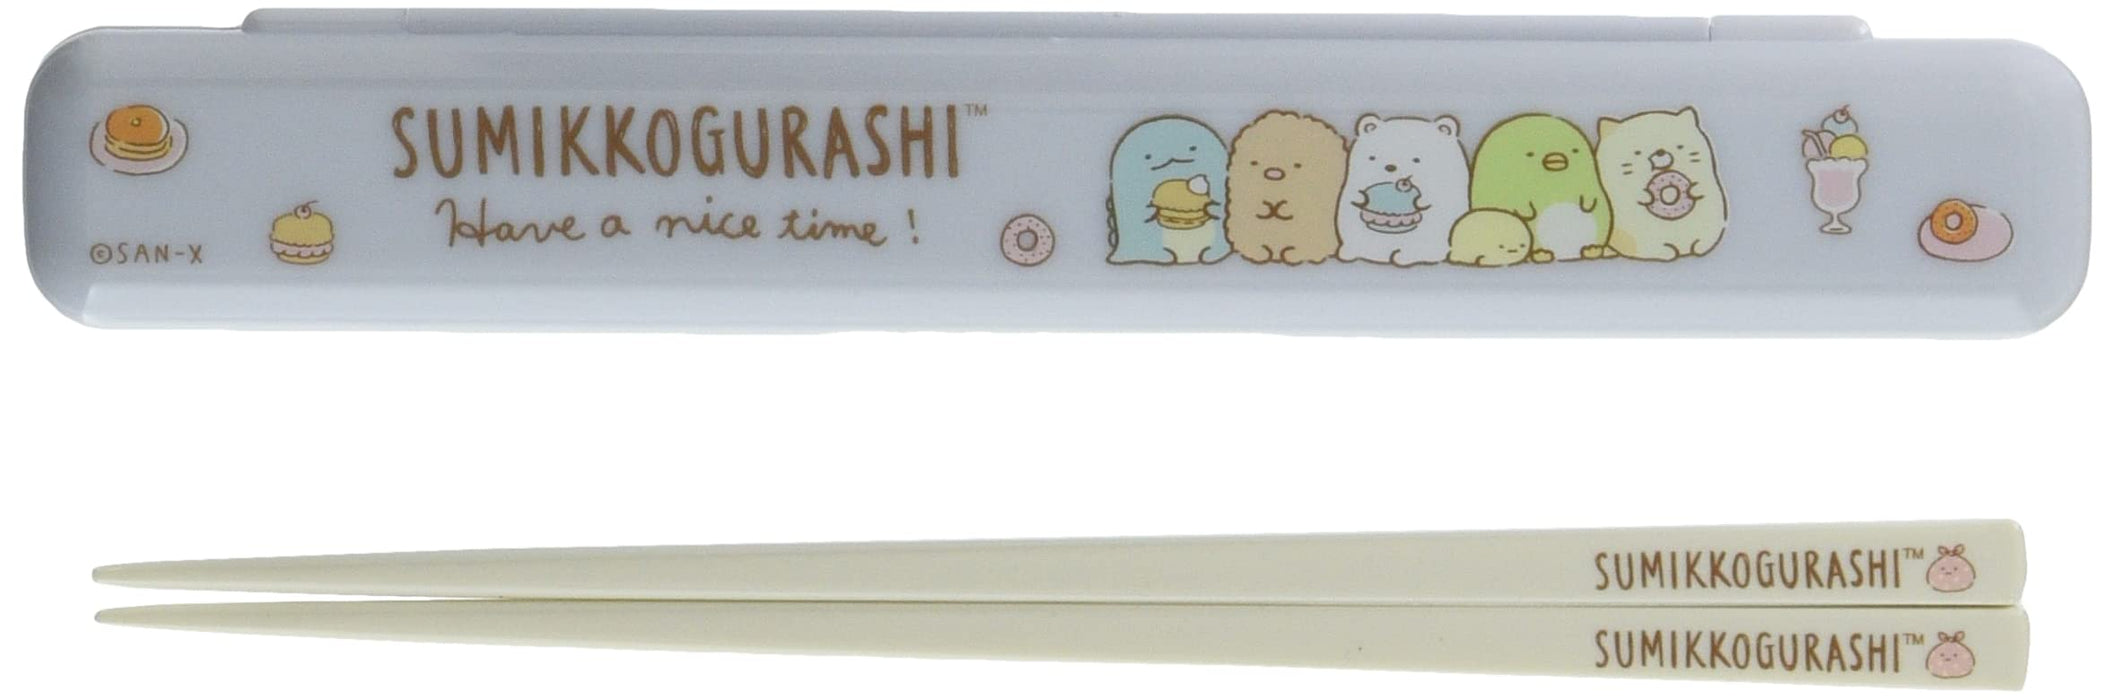 San-X Sumikko Gurashi Chopsticks Chopsticks Box Blue Ka14002